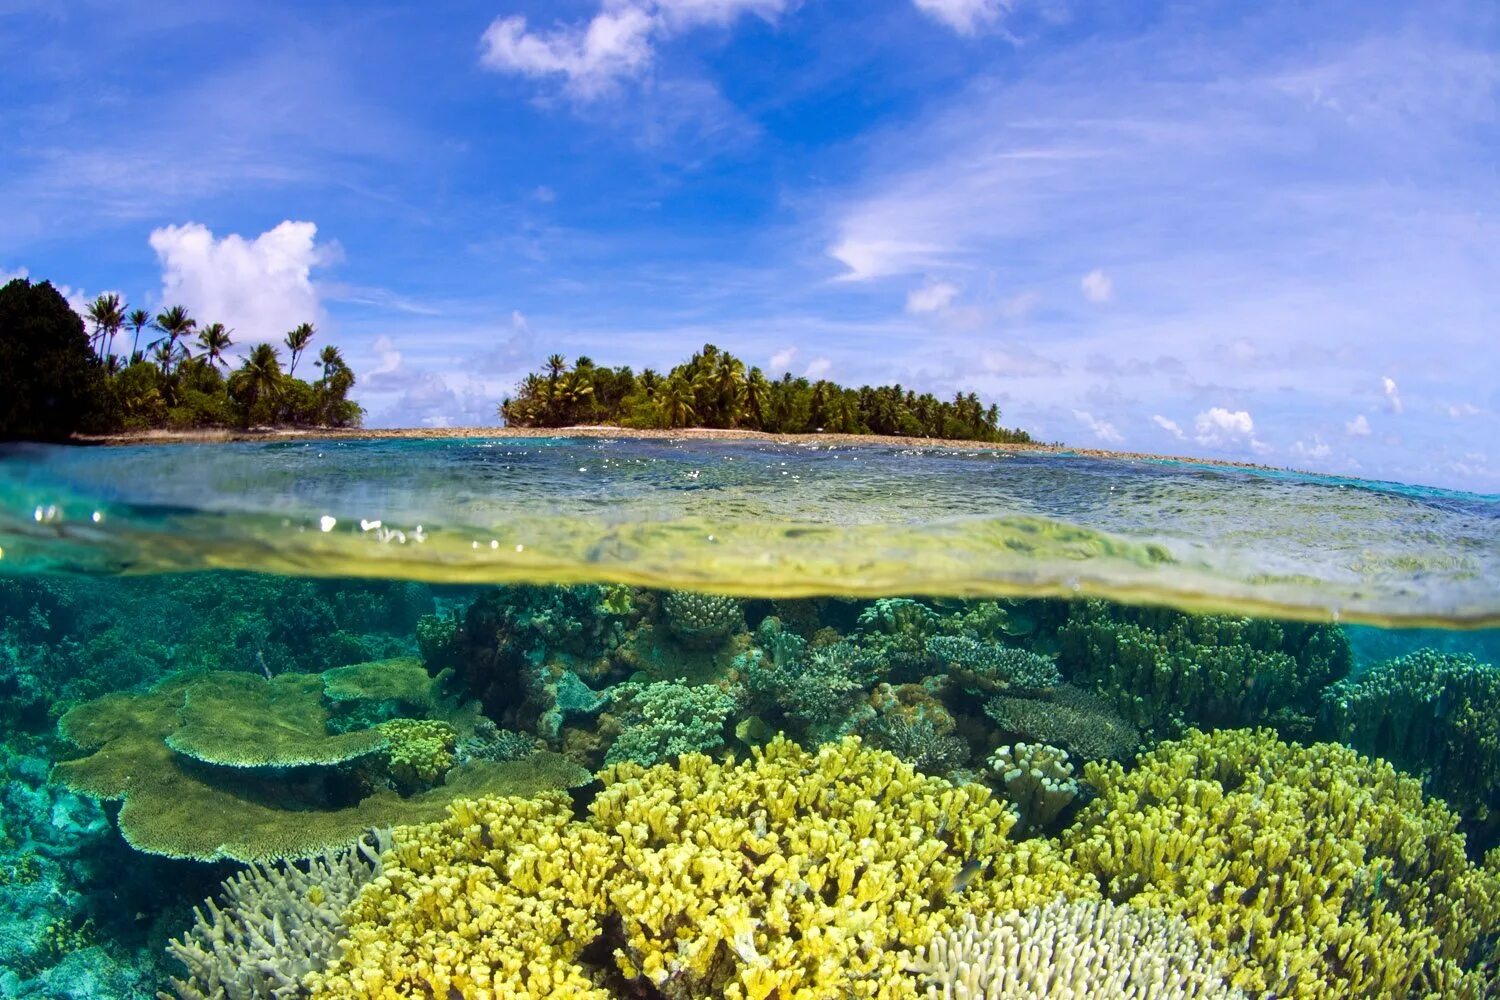 Суша тихого океана. Атолл бикини Маршалловы острова. Атолл бикини (Bikini Atoll), Маршалловы острова. Атолл коралловый остров. Атолле бикини в тихом океане.